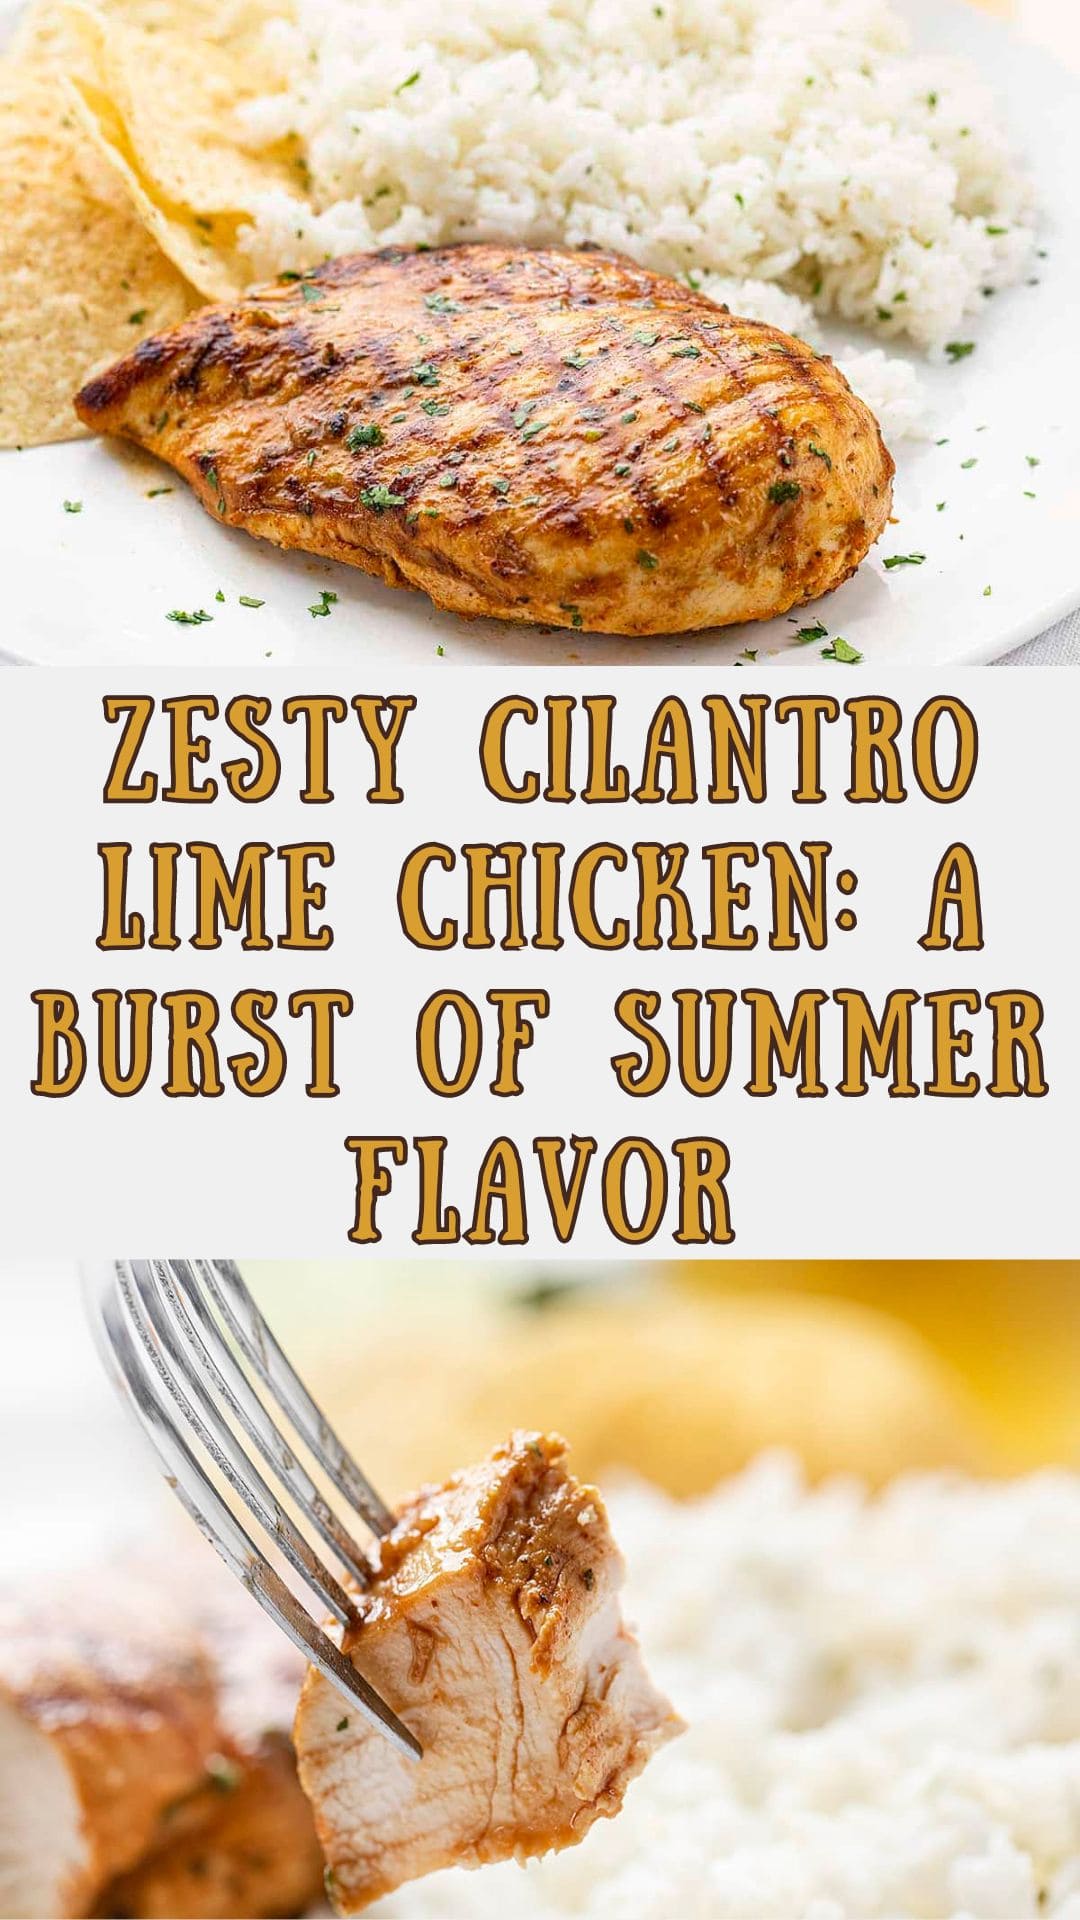 Zesty Cilantro Lime Chicken: A Burst of Summer Flavor